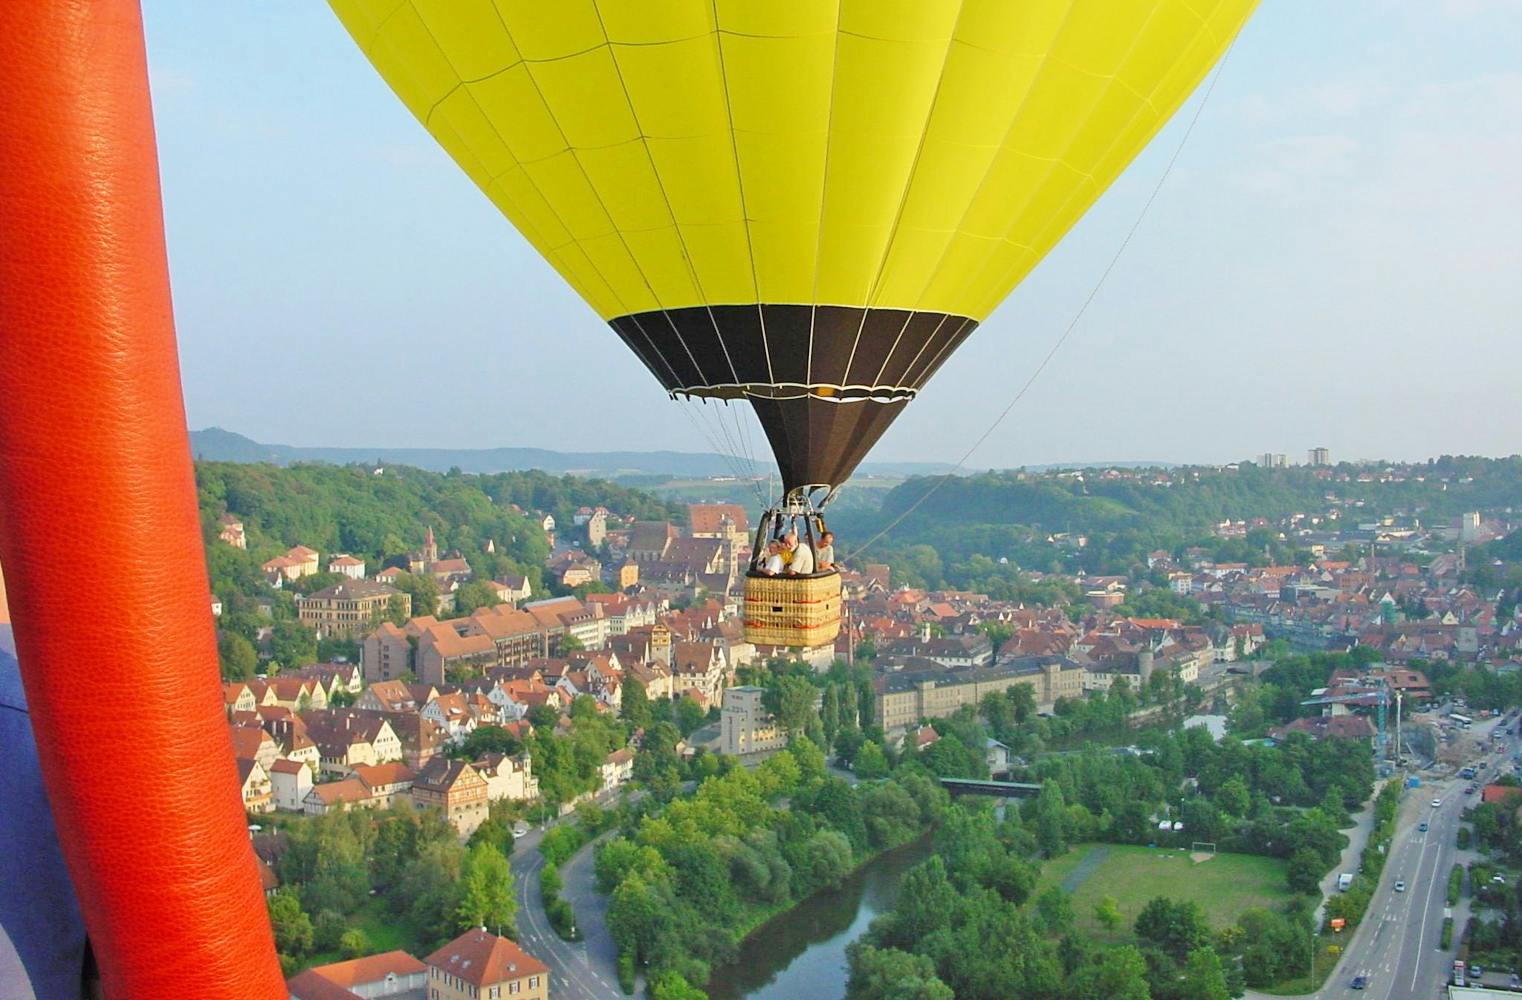 Ballon-Fahrt | Landschaft von oben entdecken | 1,5 Stunden